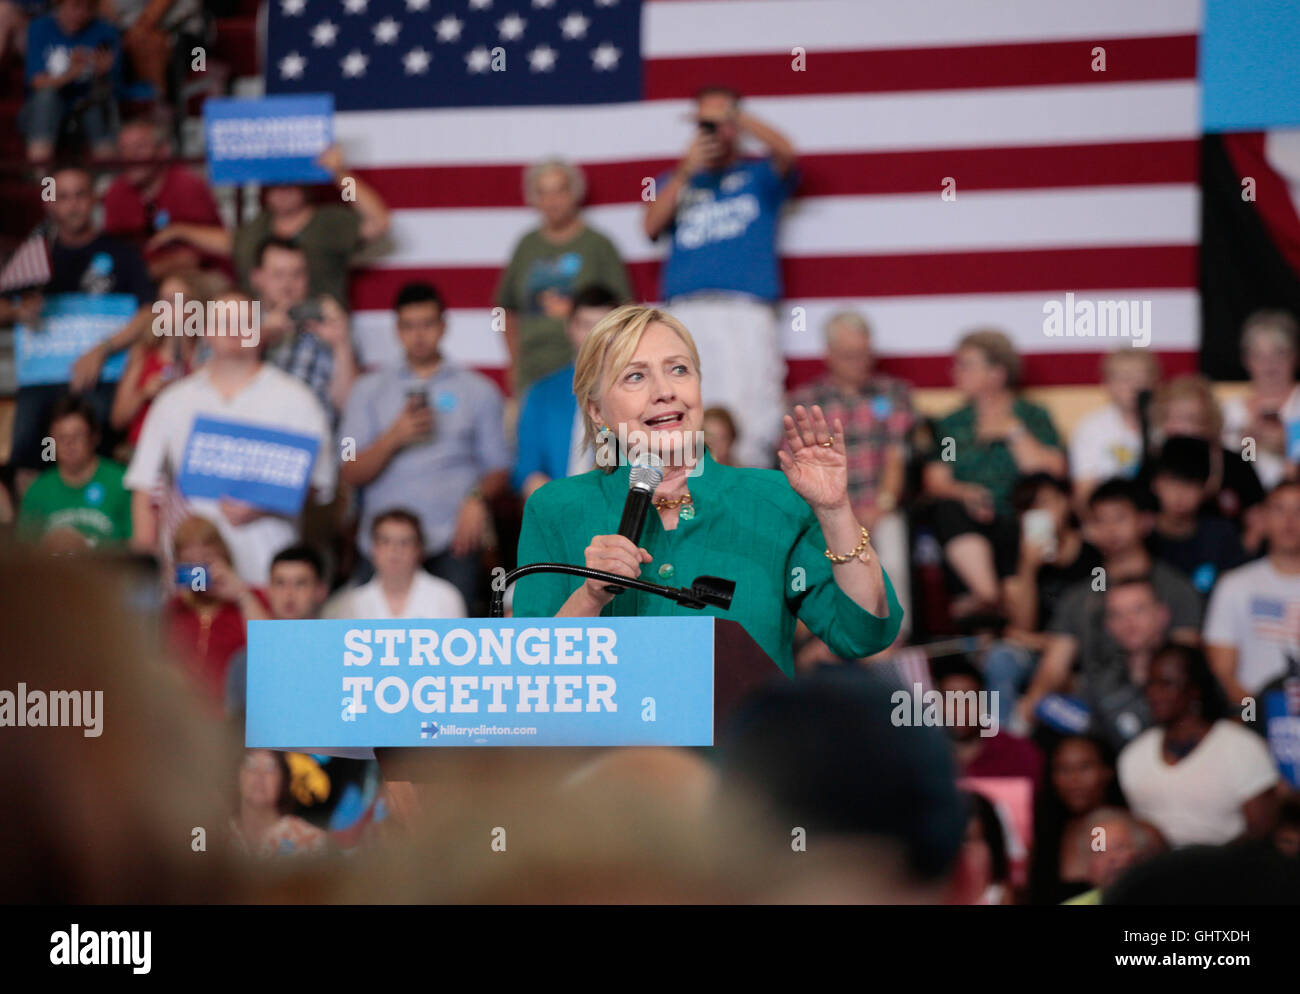 Des Moines, Iowa, USA. 10. August 2016. Demokratischen US-Präsidentschaftskandidaten Hillary Clinton hält eine Rede bei einer Kampagne-Veranstaltung an der Lincoln High School in Des Moines, Iowa, USA, 10. August 2016. Foto: Brian C. Frank/Dpa/Alamy Live News Stockfoto